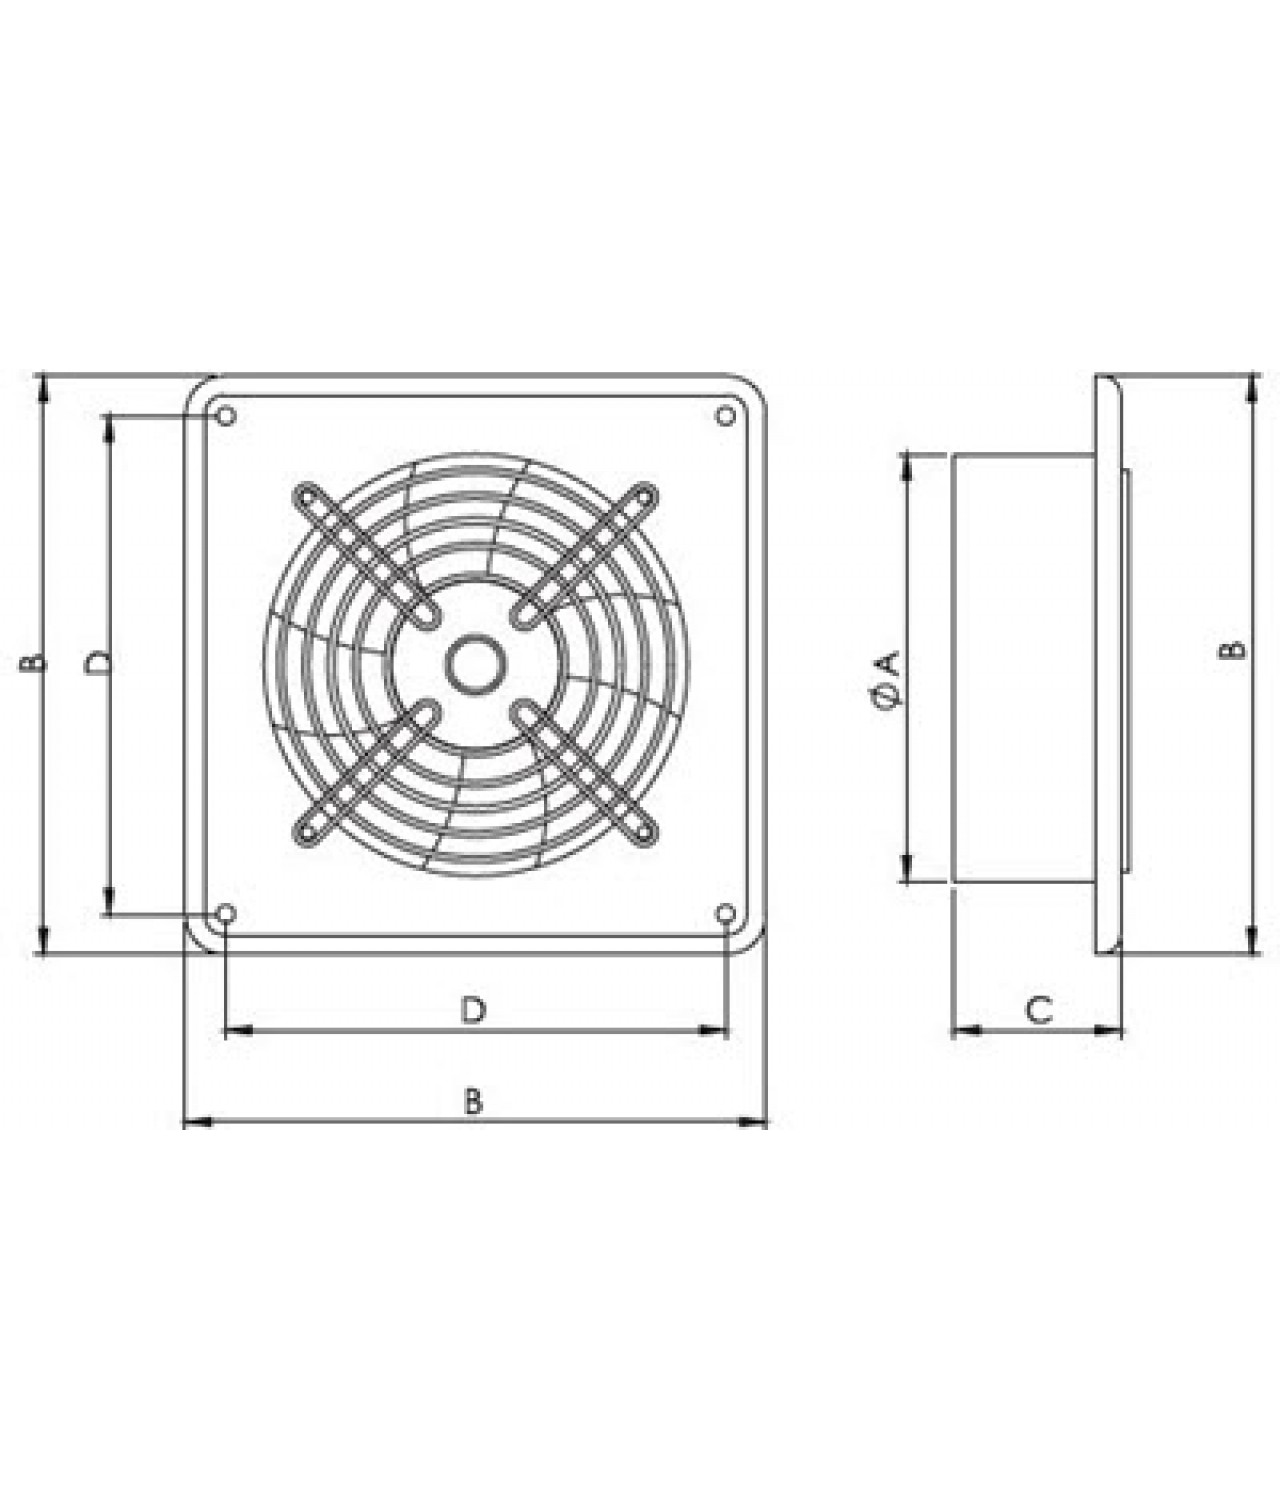 Ašiniai ventiliatoriai Axia ROK ≤20695 m³/h - brėžinys